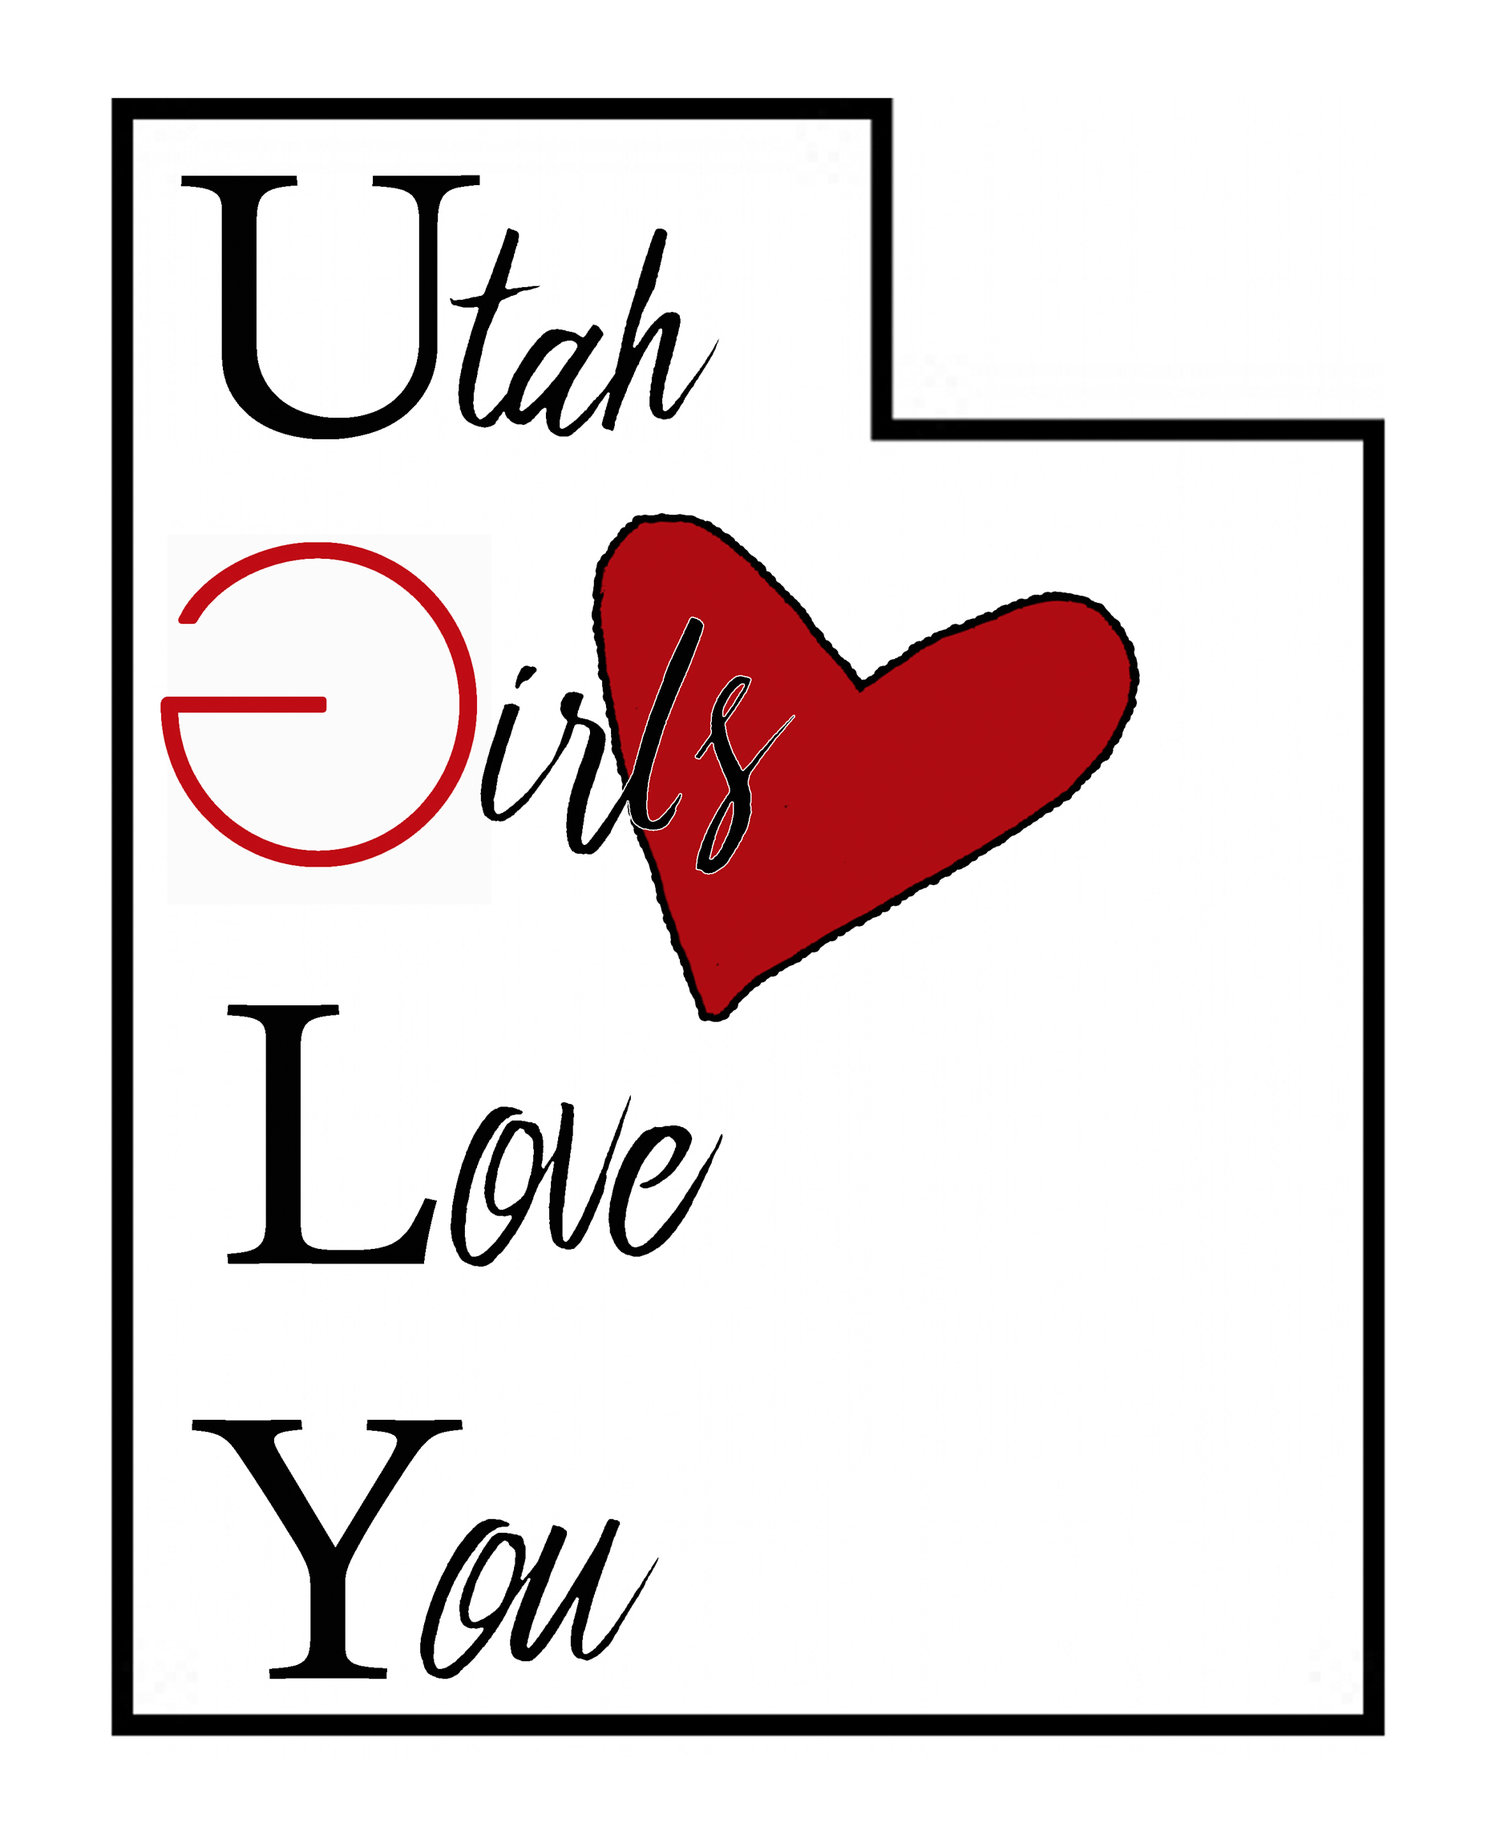 Utah Girls Love You